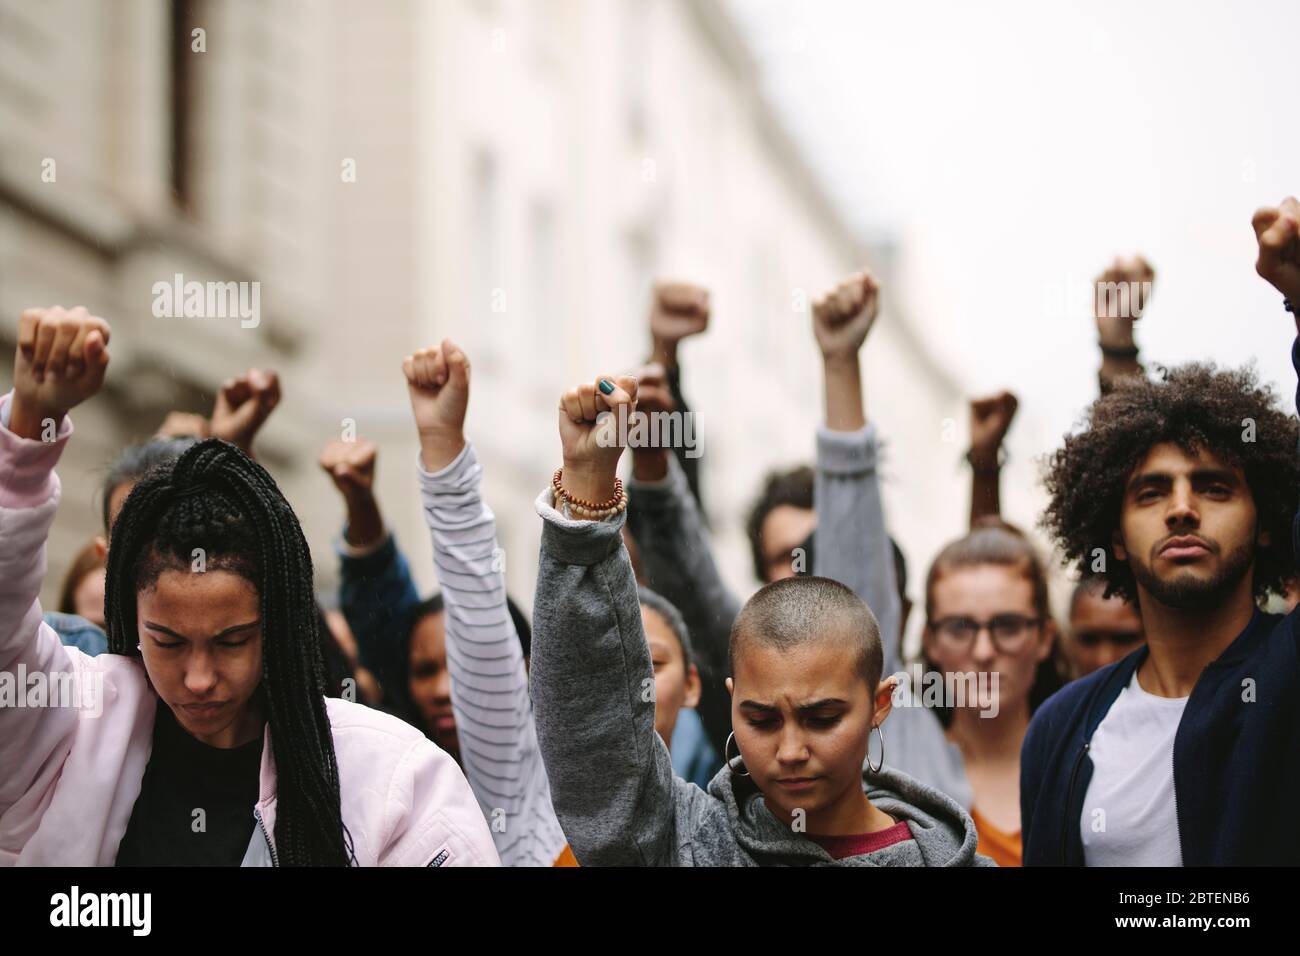 Groupe de manifestants sur la route avec leurs bras levés. Des personnes multiethniques protestant dans la rue. Banque D'Images